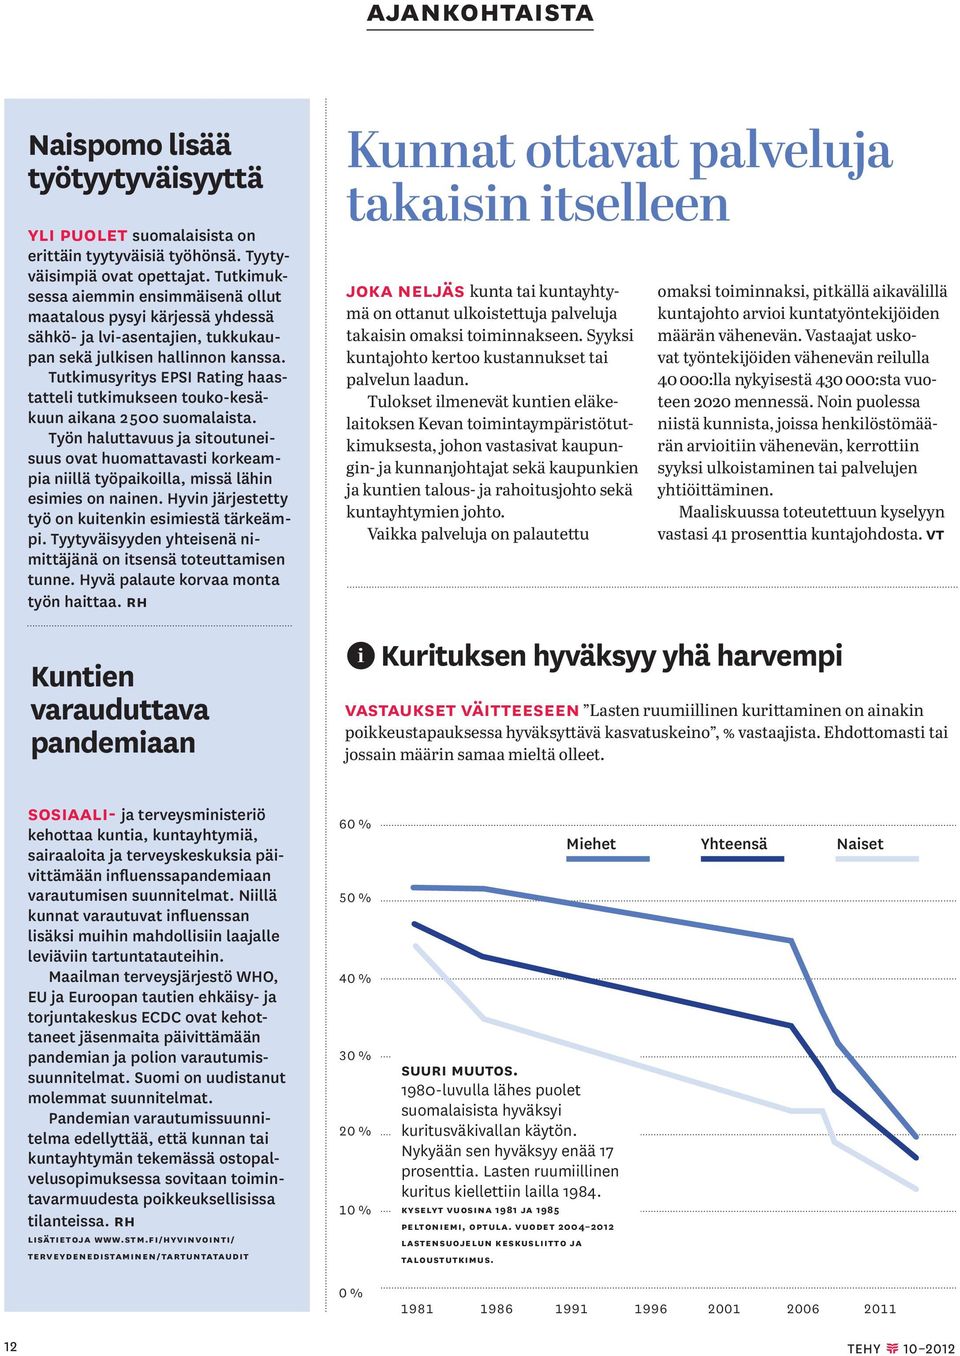 Tutkimusyritys EPSI Rating haastatteli tutkimukseen touko-kesäkuun aikana 2 500 suomalaista.